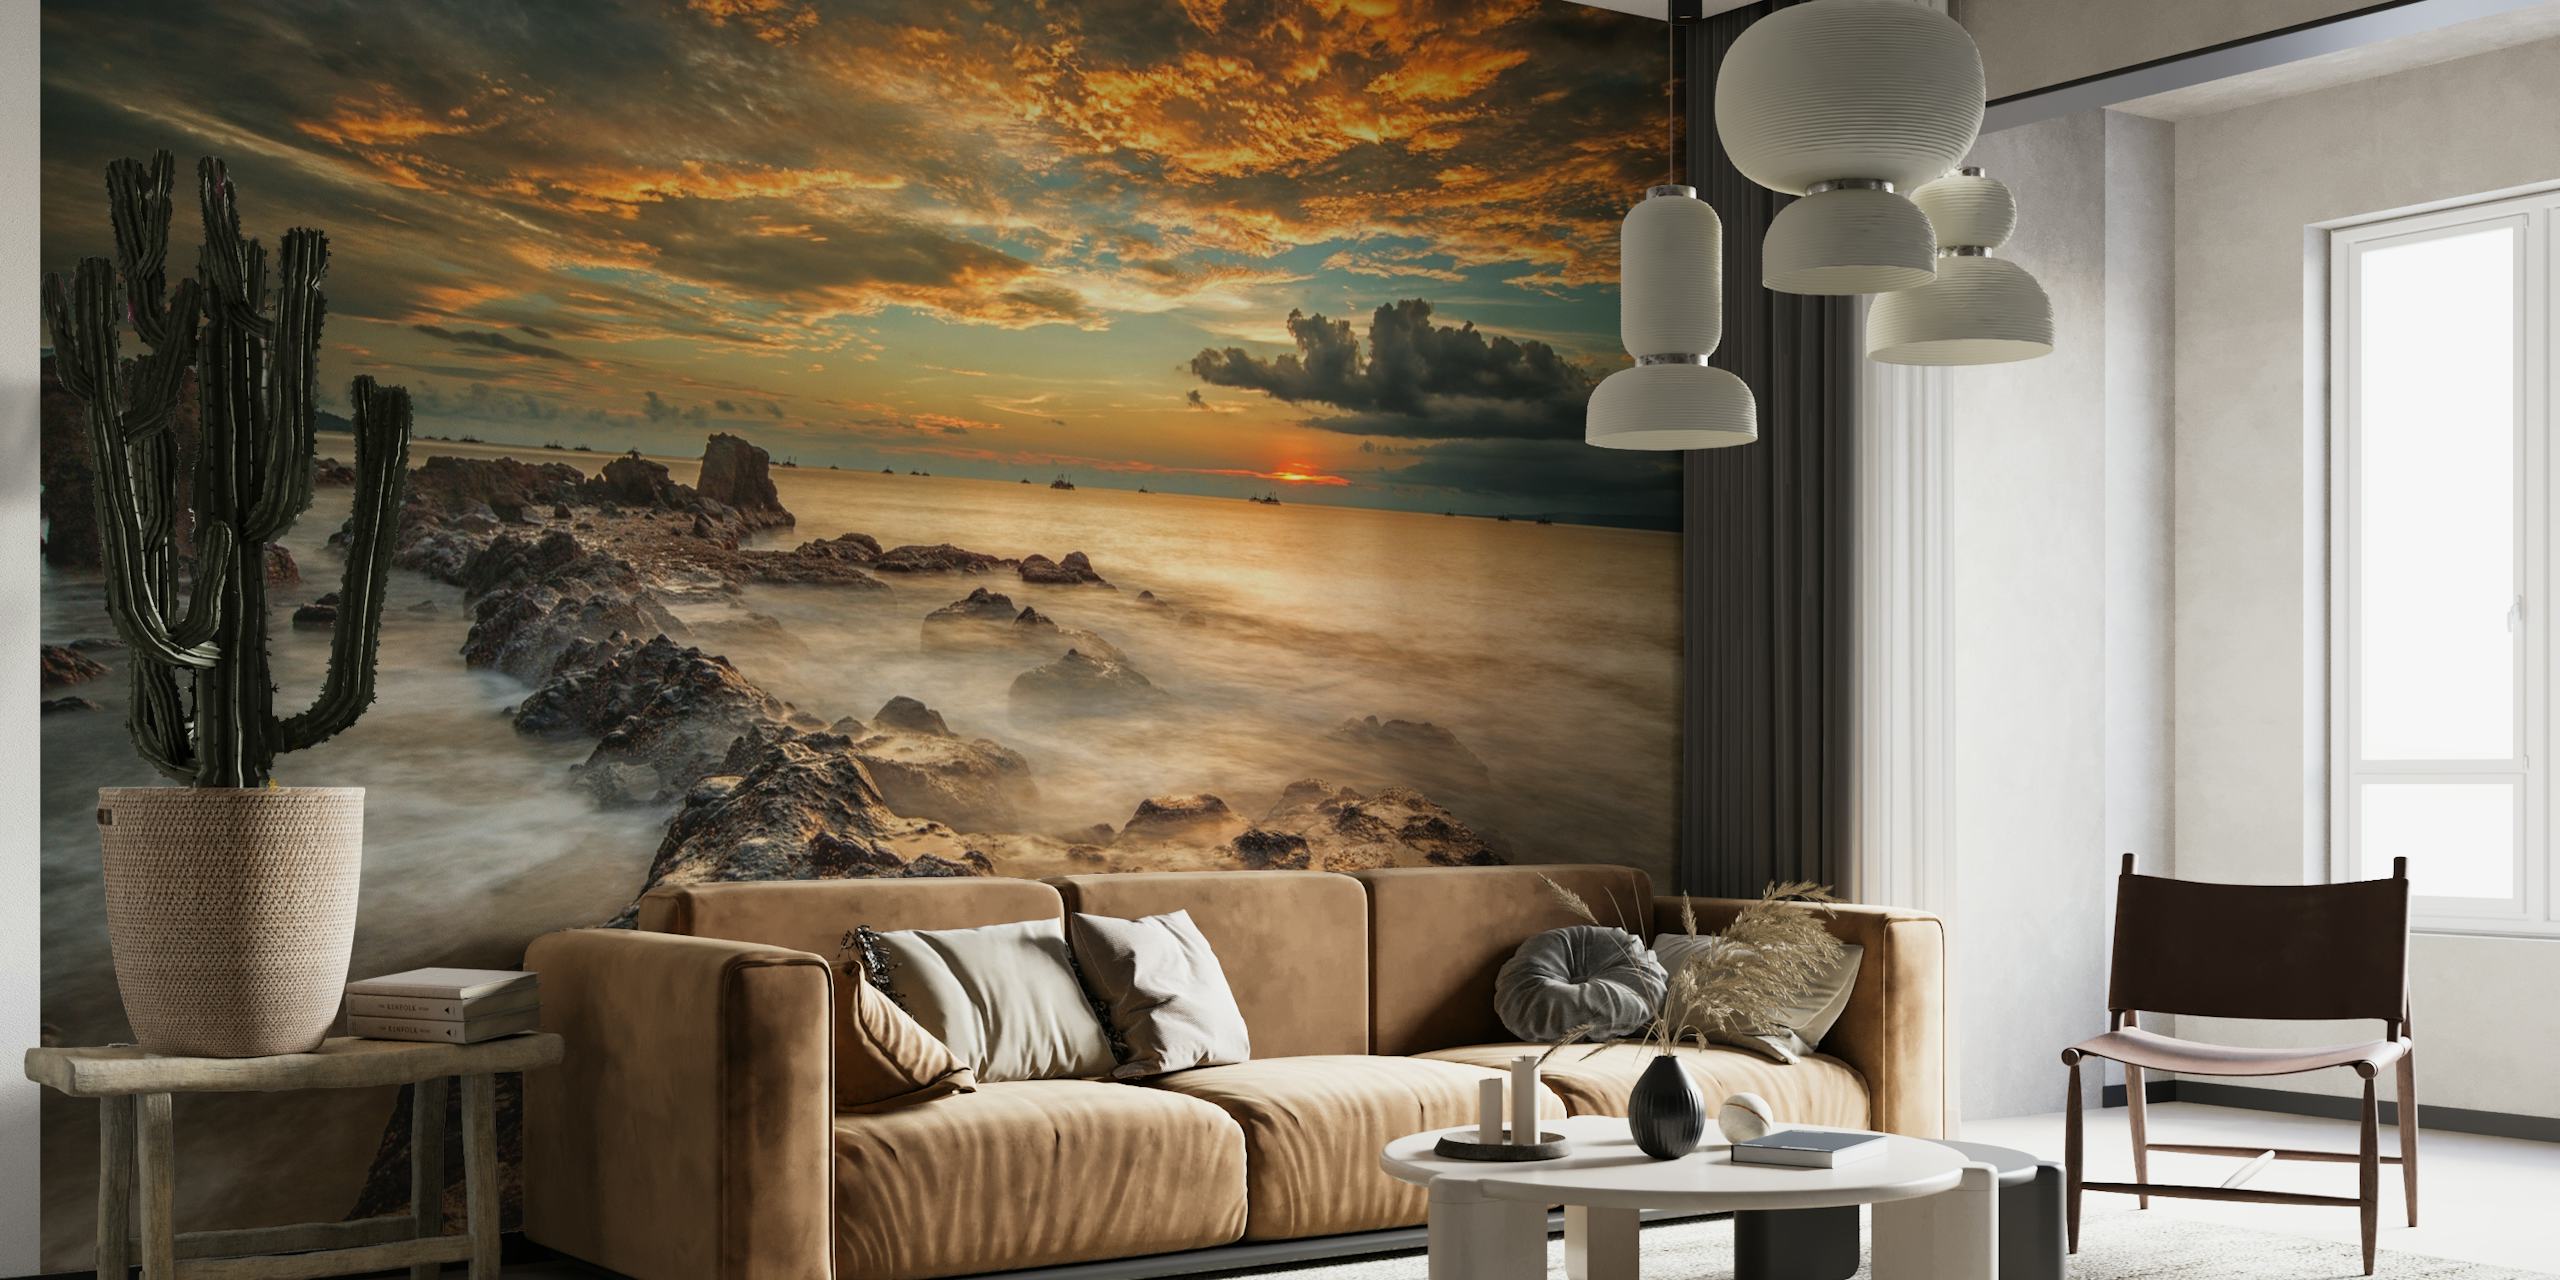 Dramatische strandmuurschildering met stormachtige zee en vurige zonsondergangwolken